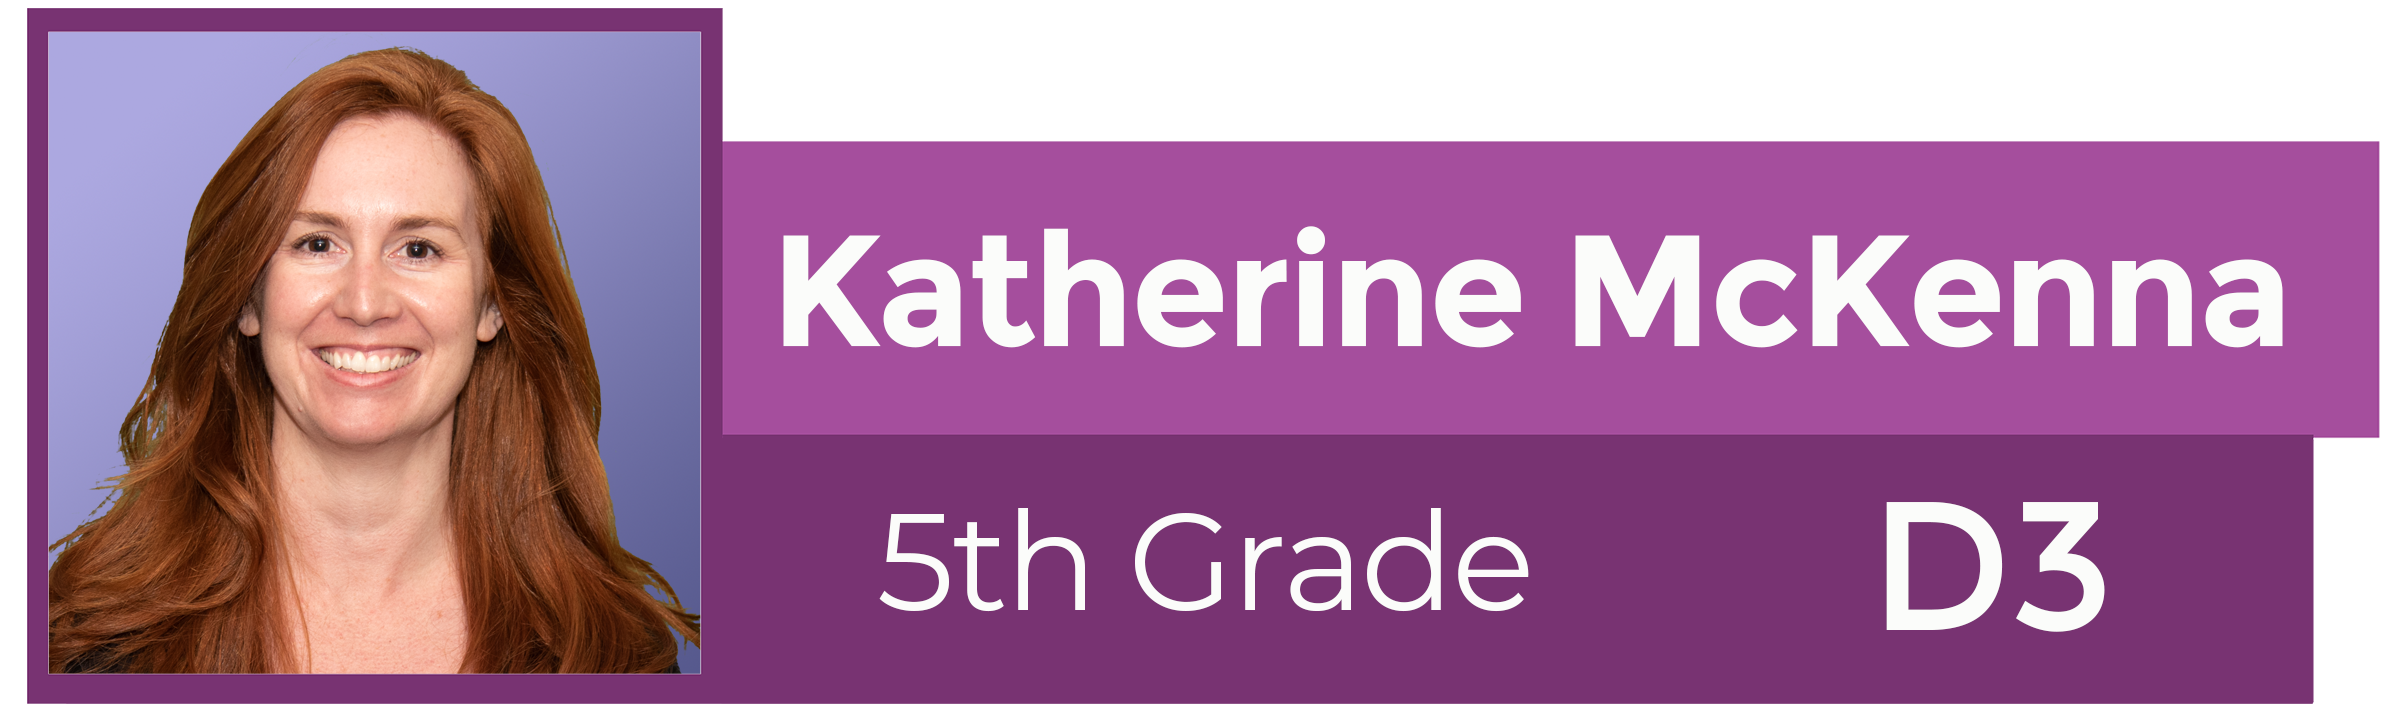 Katherine McKenna 5th Grade